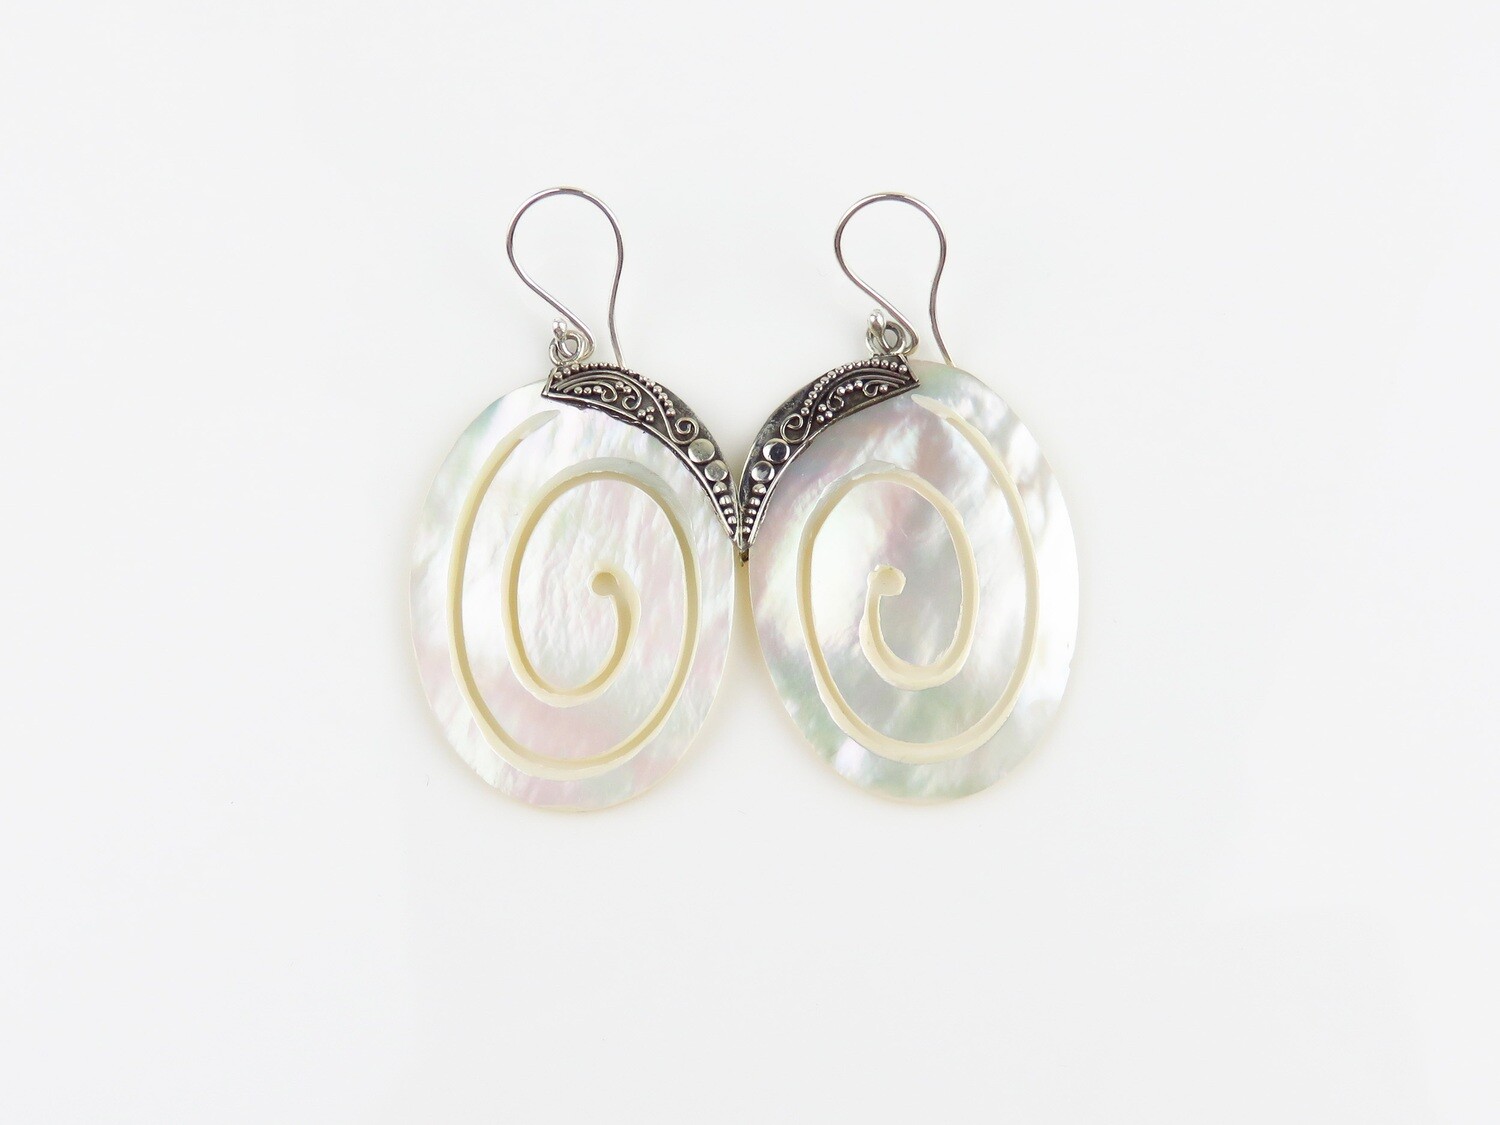 Sterling Silver, Spiral Design, White Shell, Dangle Earrings SSE-163